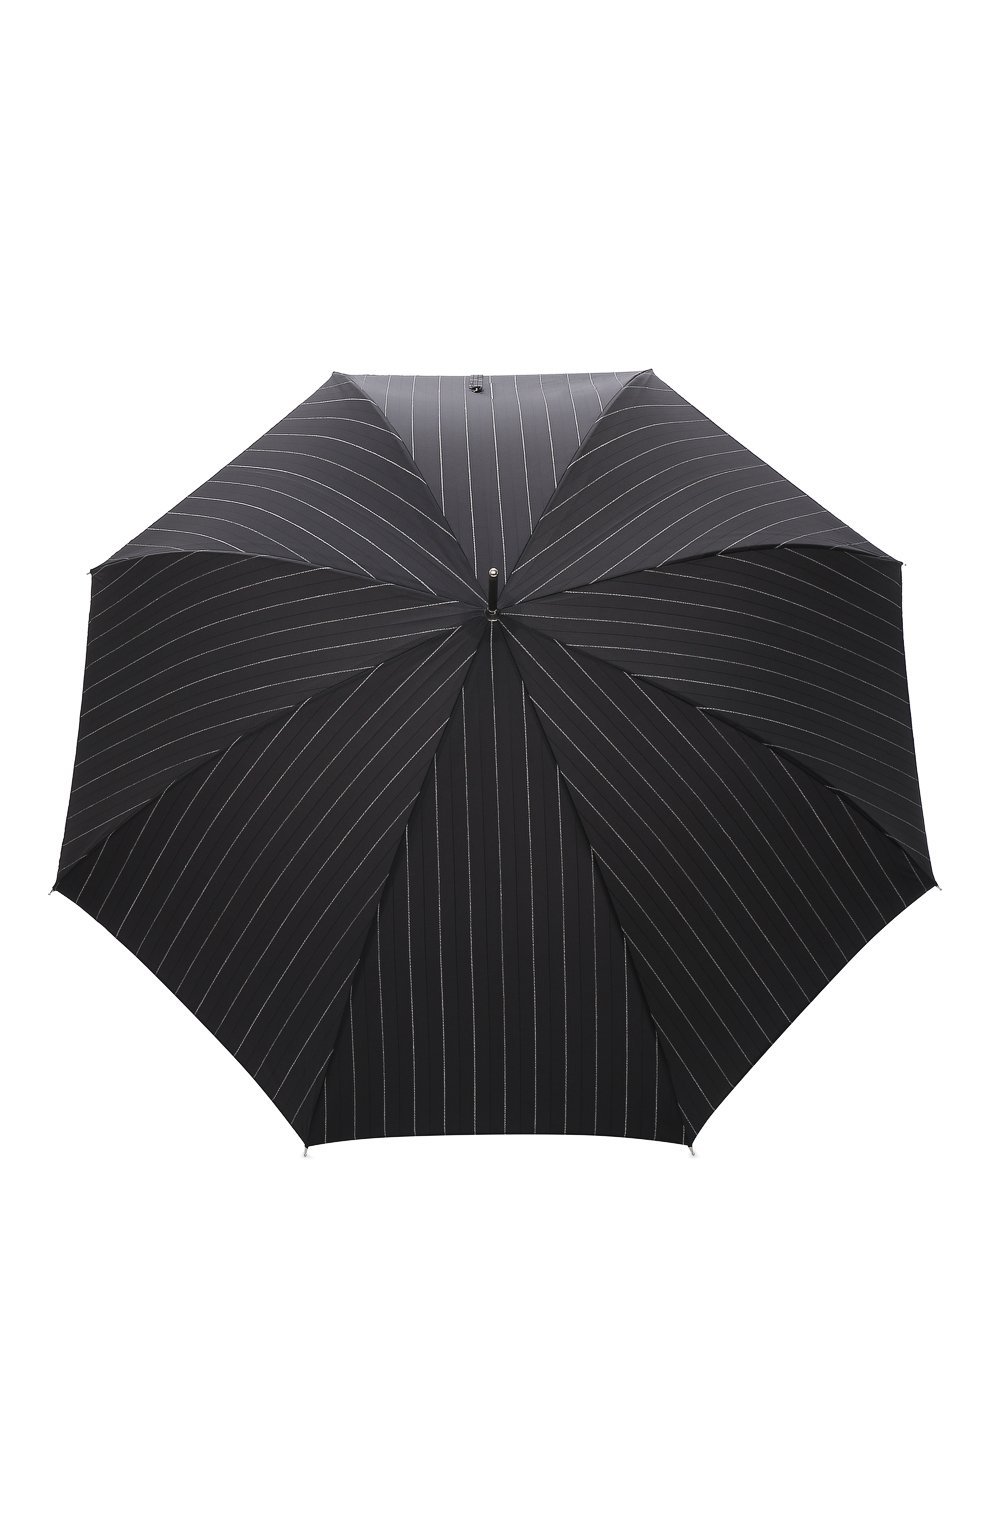 Мужской зонт-трость PASOTTI OMBRELLI черного цвета, арт. 478/RAS0 1094/1/M31 | Фото 1 (Материал: Текстиль, Синтетический материал, Металл)